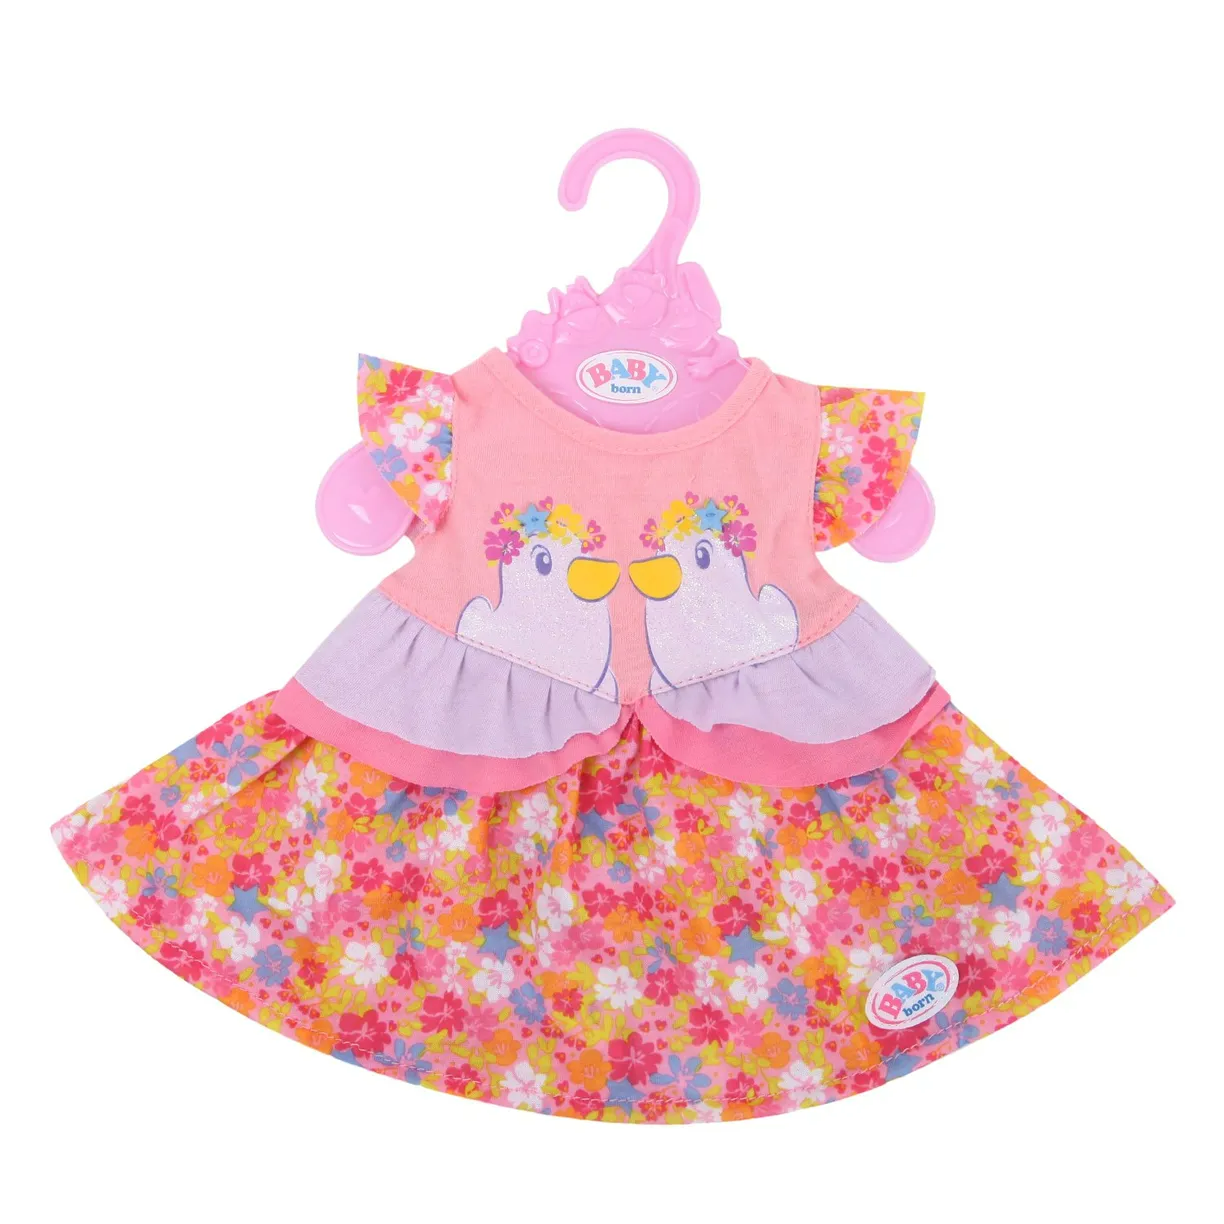 Одежда для куклы Zapf Creation Baby Born платье очки 824-559 shantou одежда для куклы 45 см боди и шапочка yale baby синяя blc59